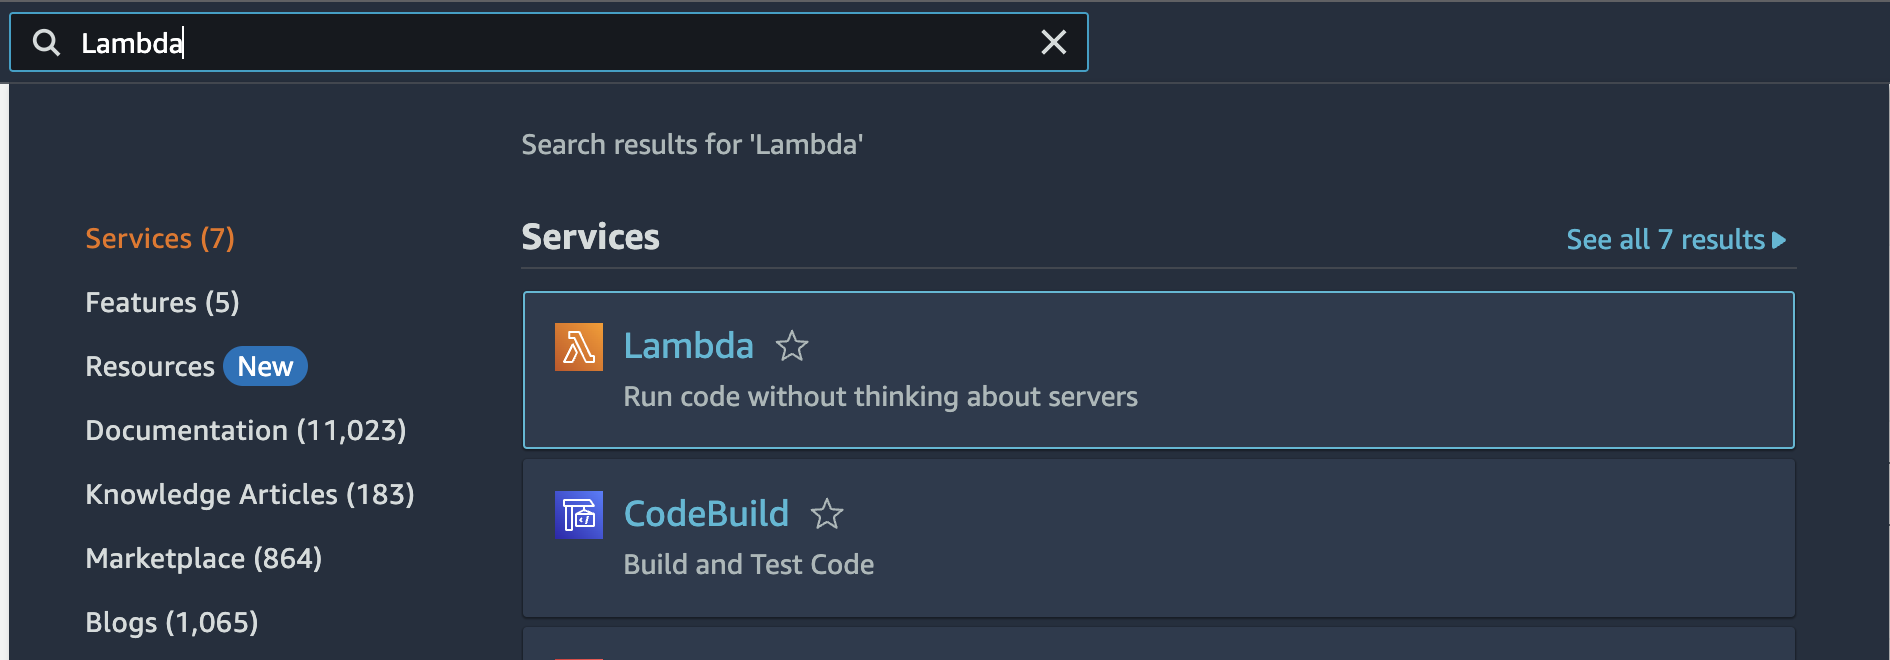 AWS search for "Lambda"